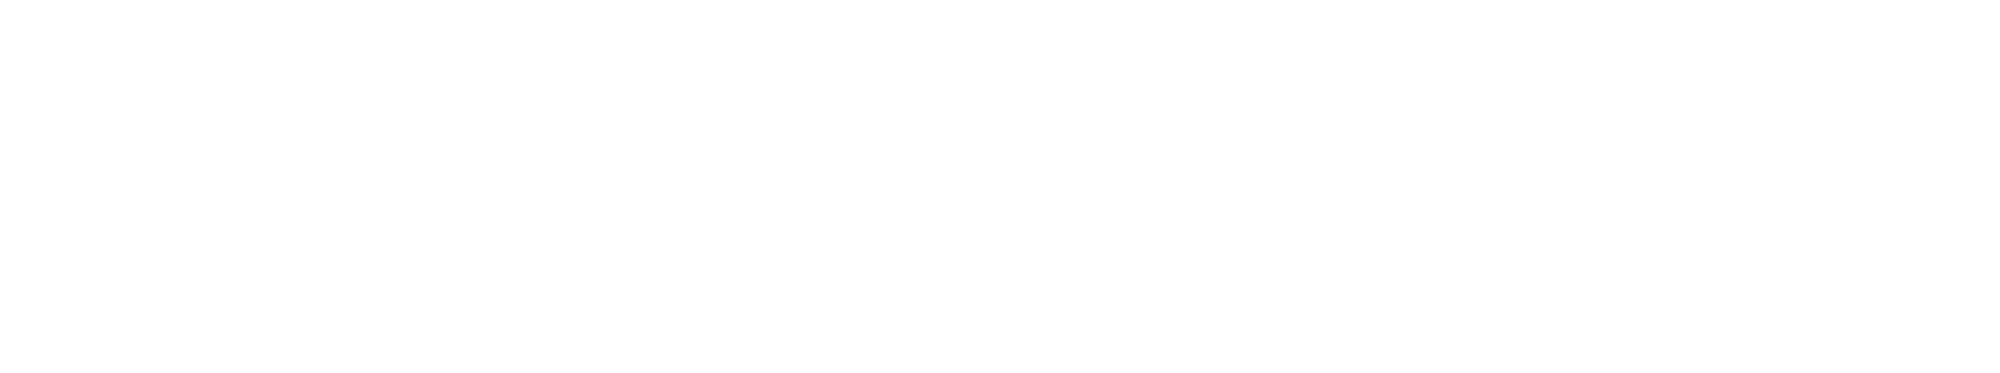 Esheat.net